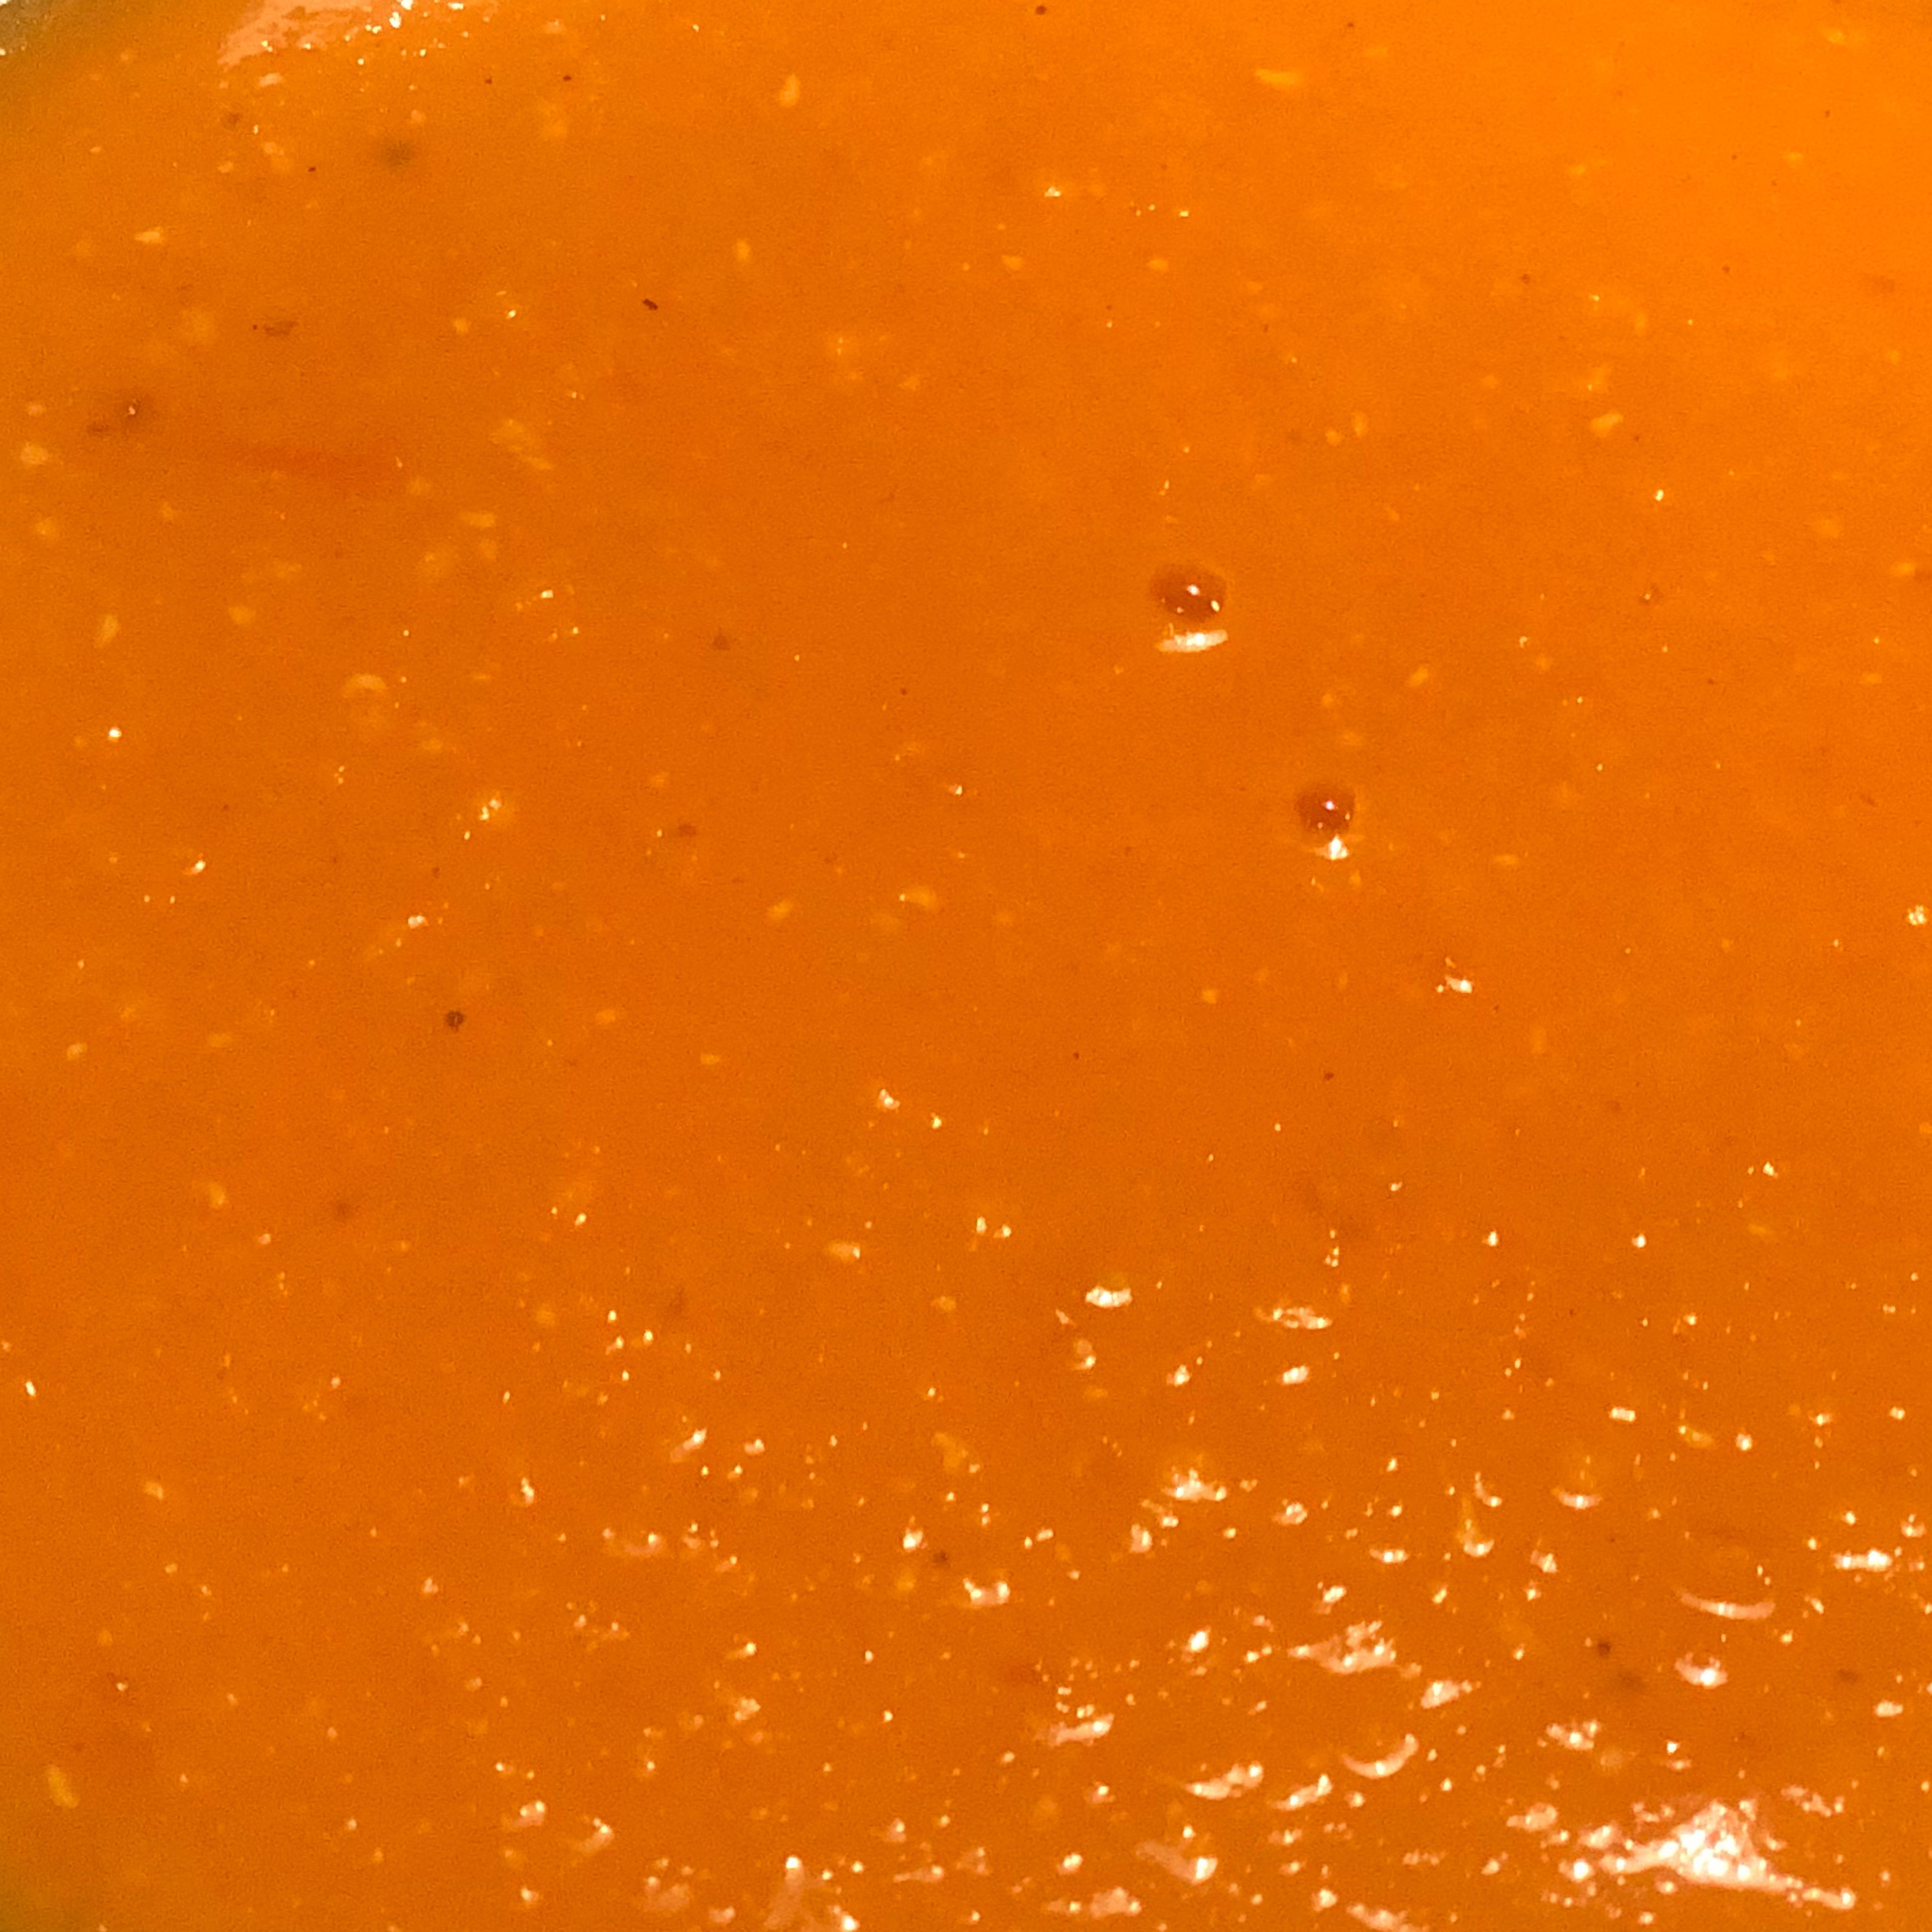 Die Suppe leicht pürieren (je nach Belieben mehr oder wenig), dann nochmals abschmecken und ggf. Gewürze oder Orangensaft hinzufügen. Fertig!